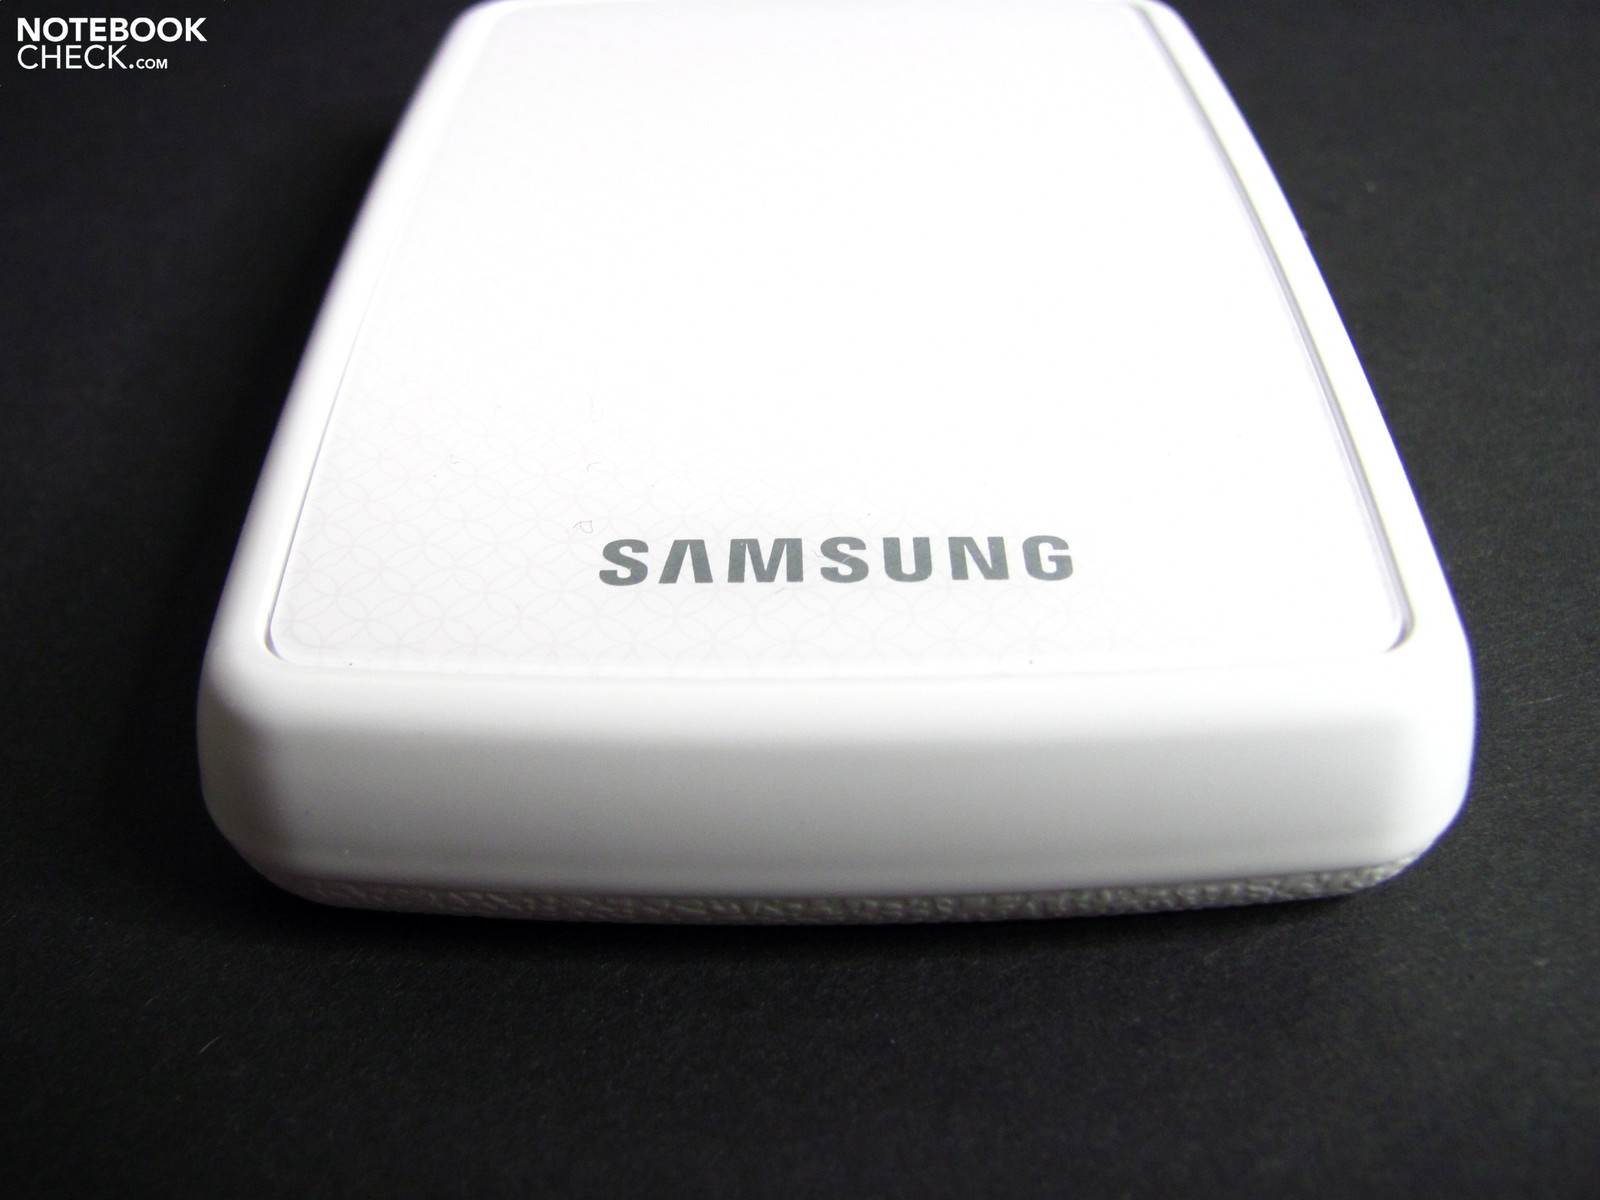 Samsung S1 Mini et S2, des disques durs externes 1.8 pouces et 2.5